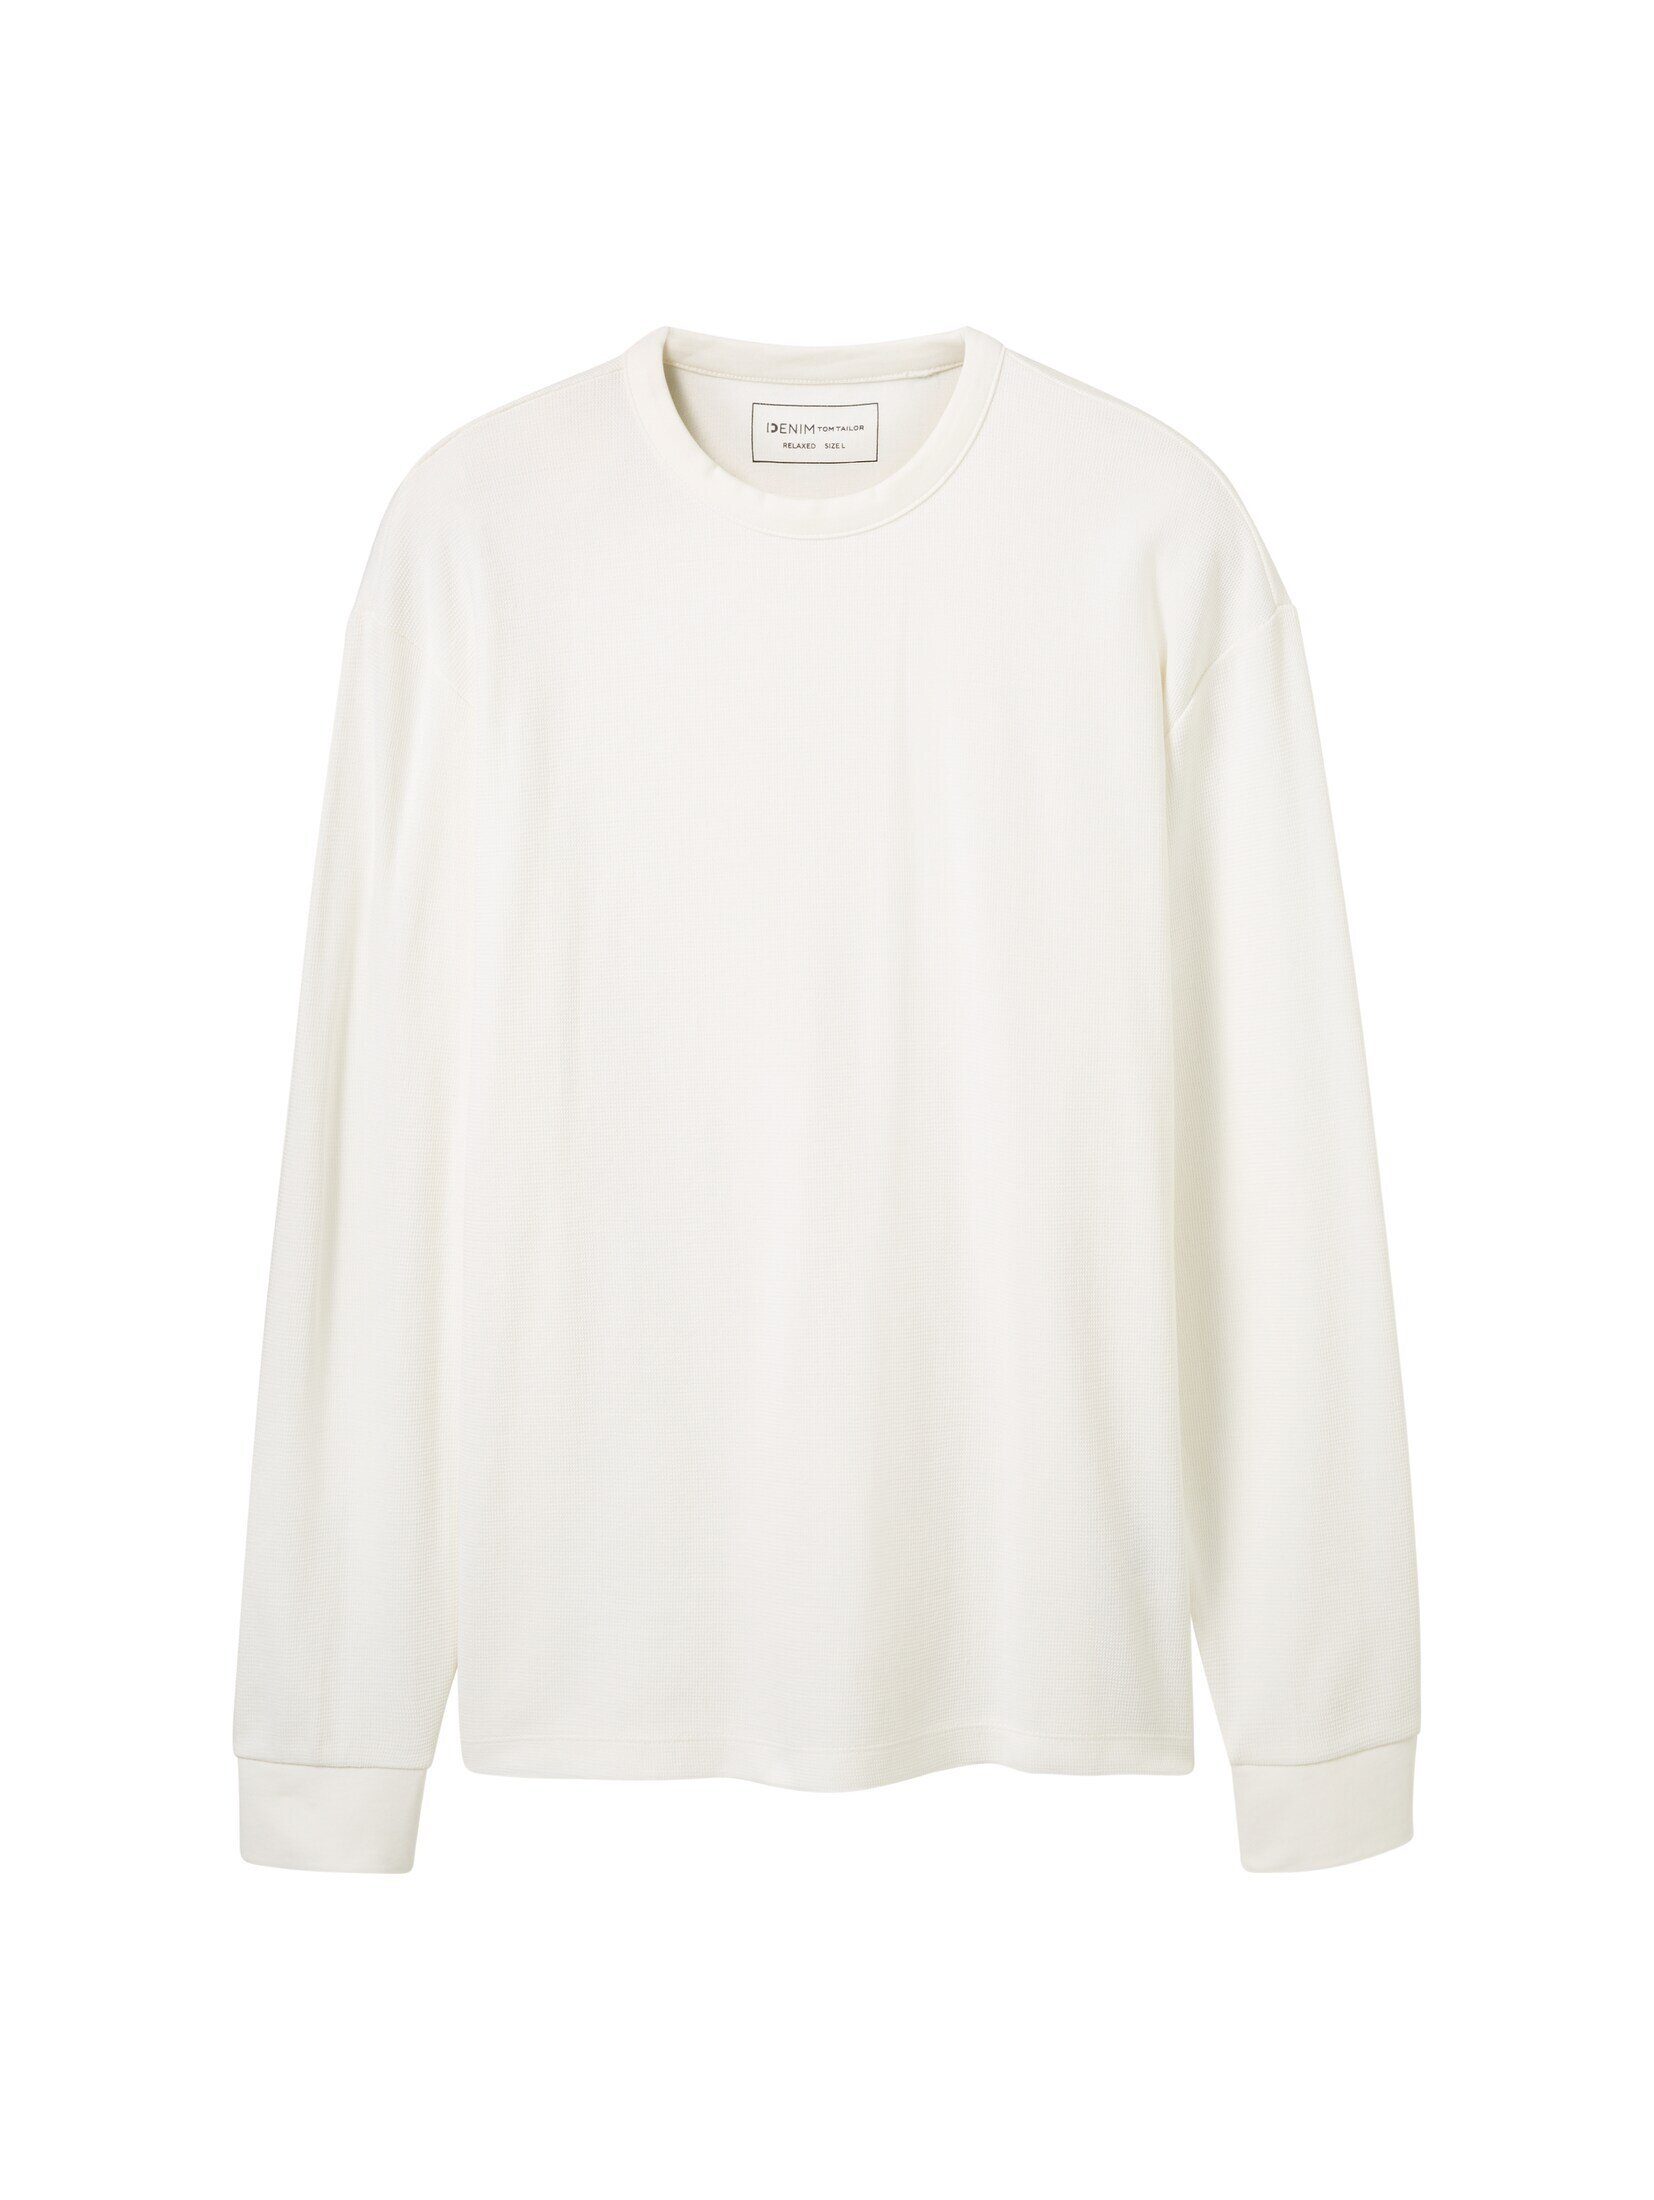 TOM TAILOR Denim T-Shirt Langarmshirt White mit Wool Struktur